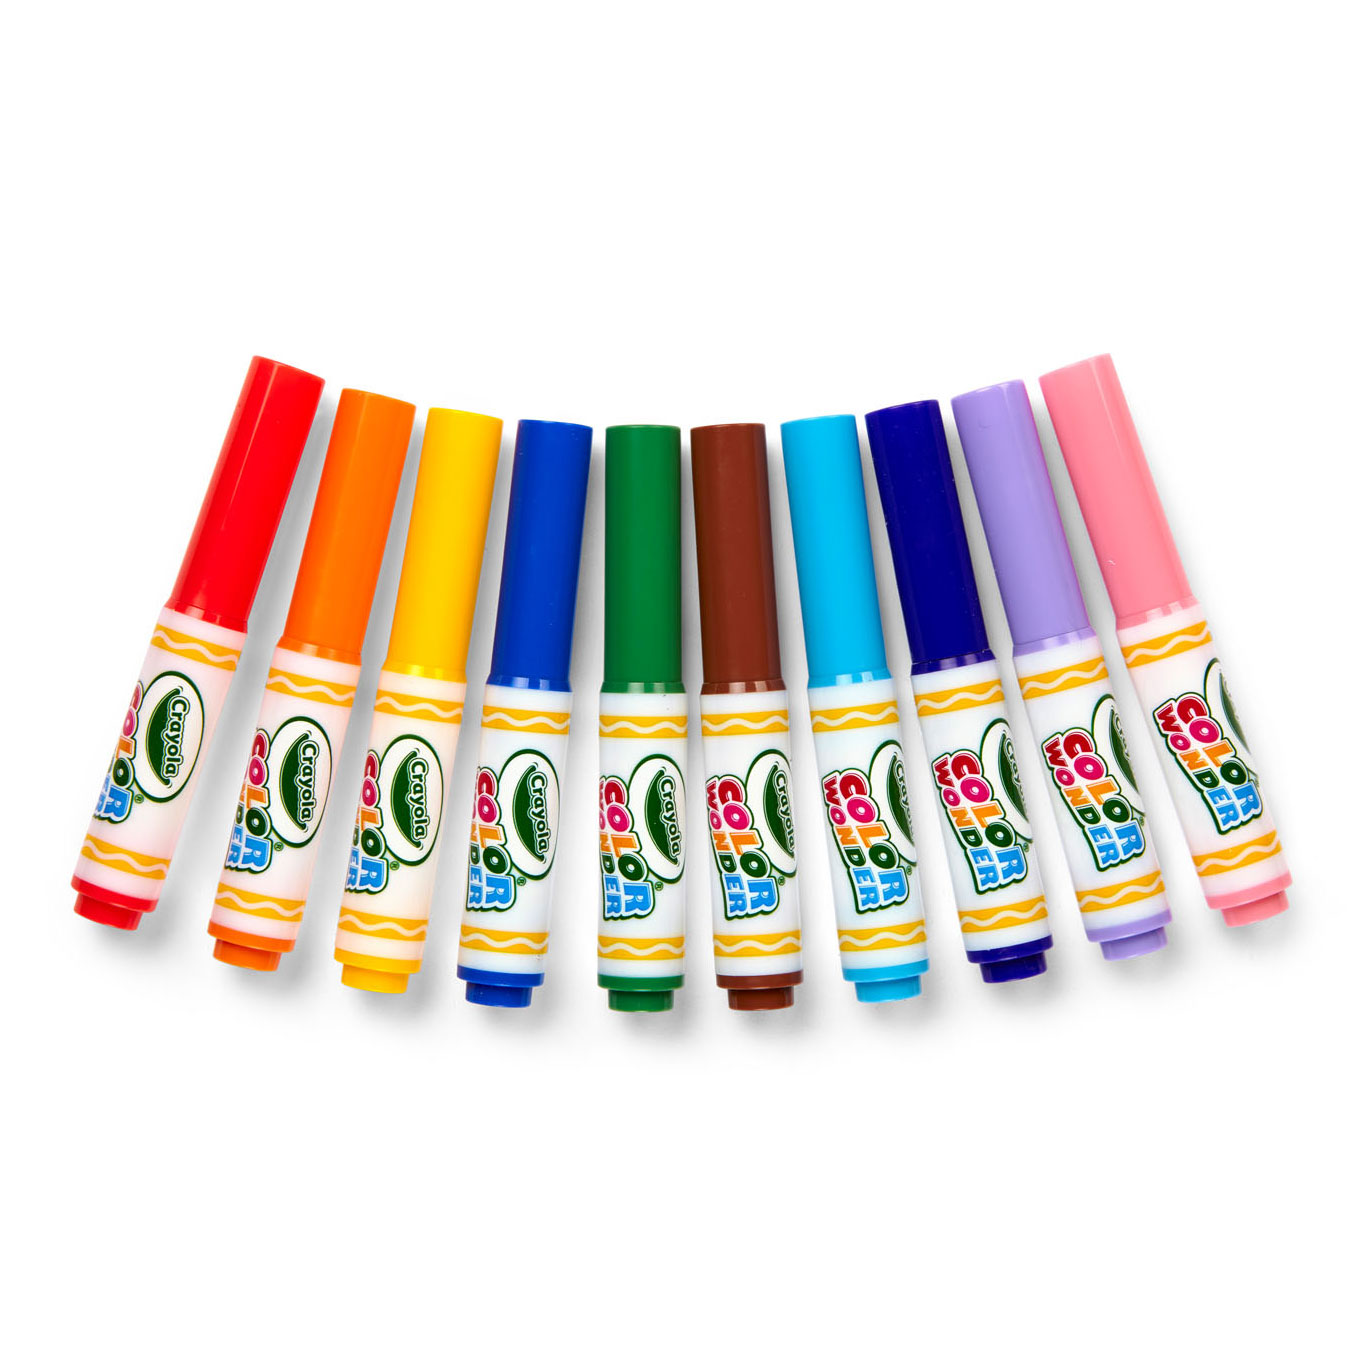 Stylos-feutres lavables classiques Color Wonder de Crayola